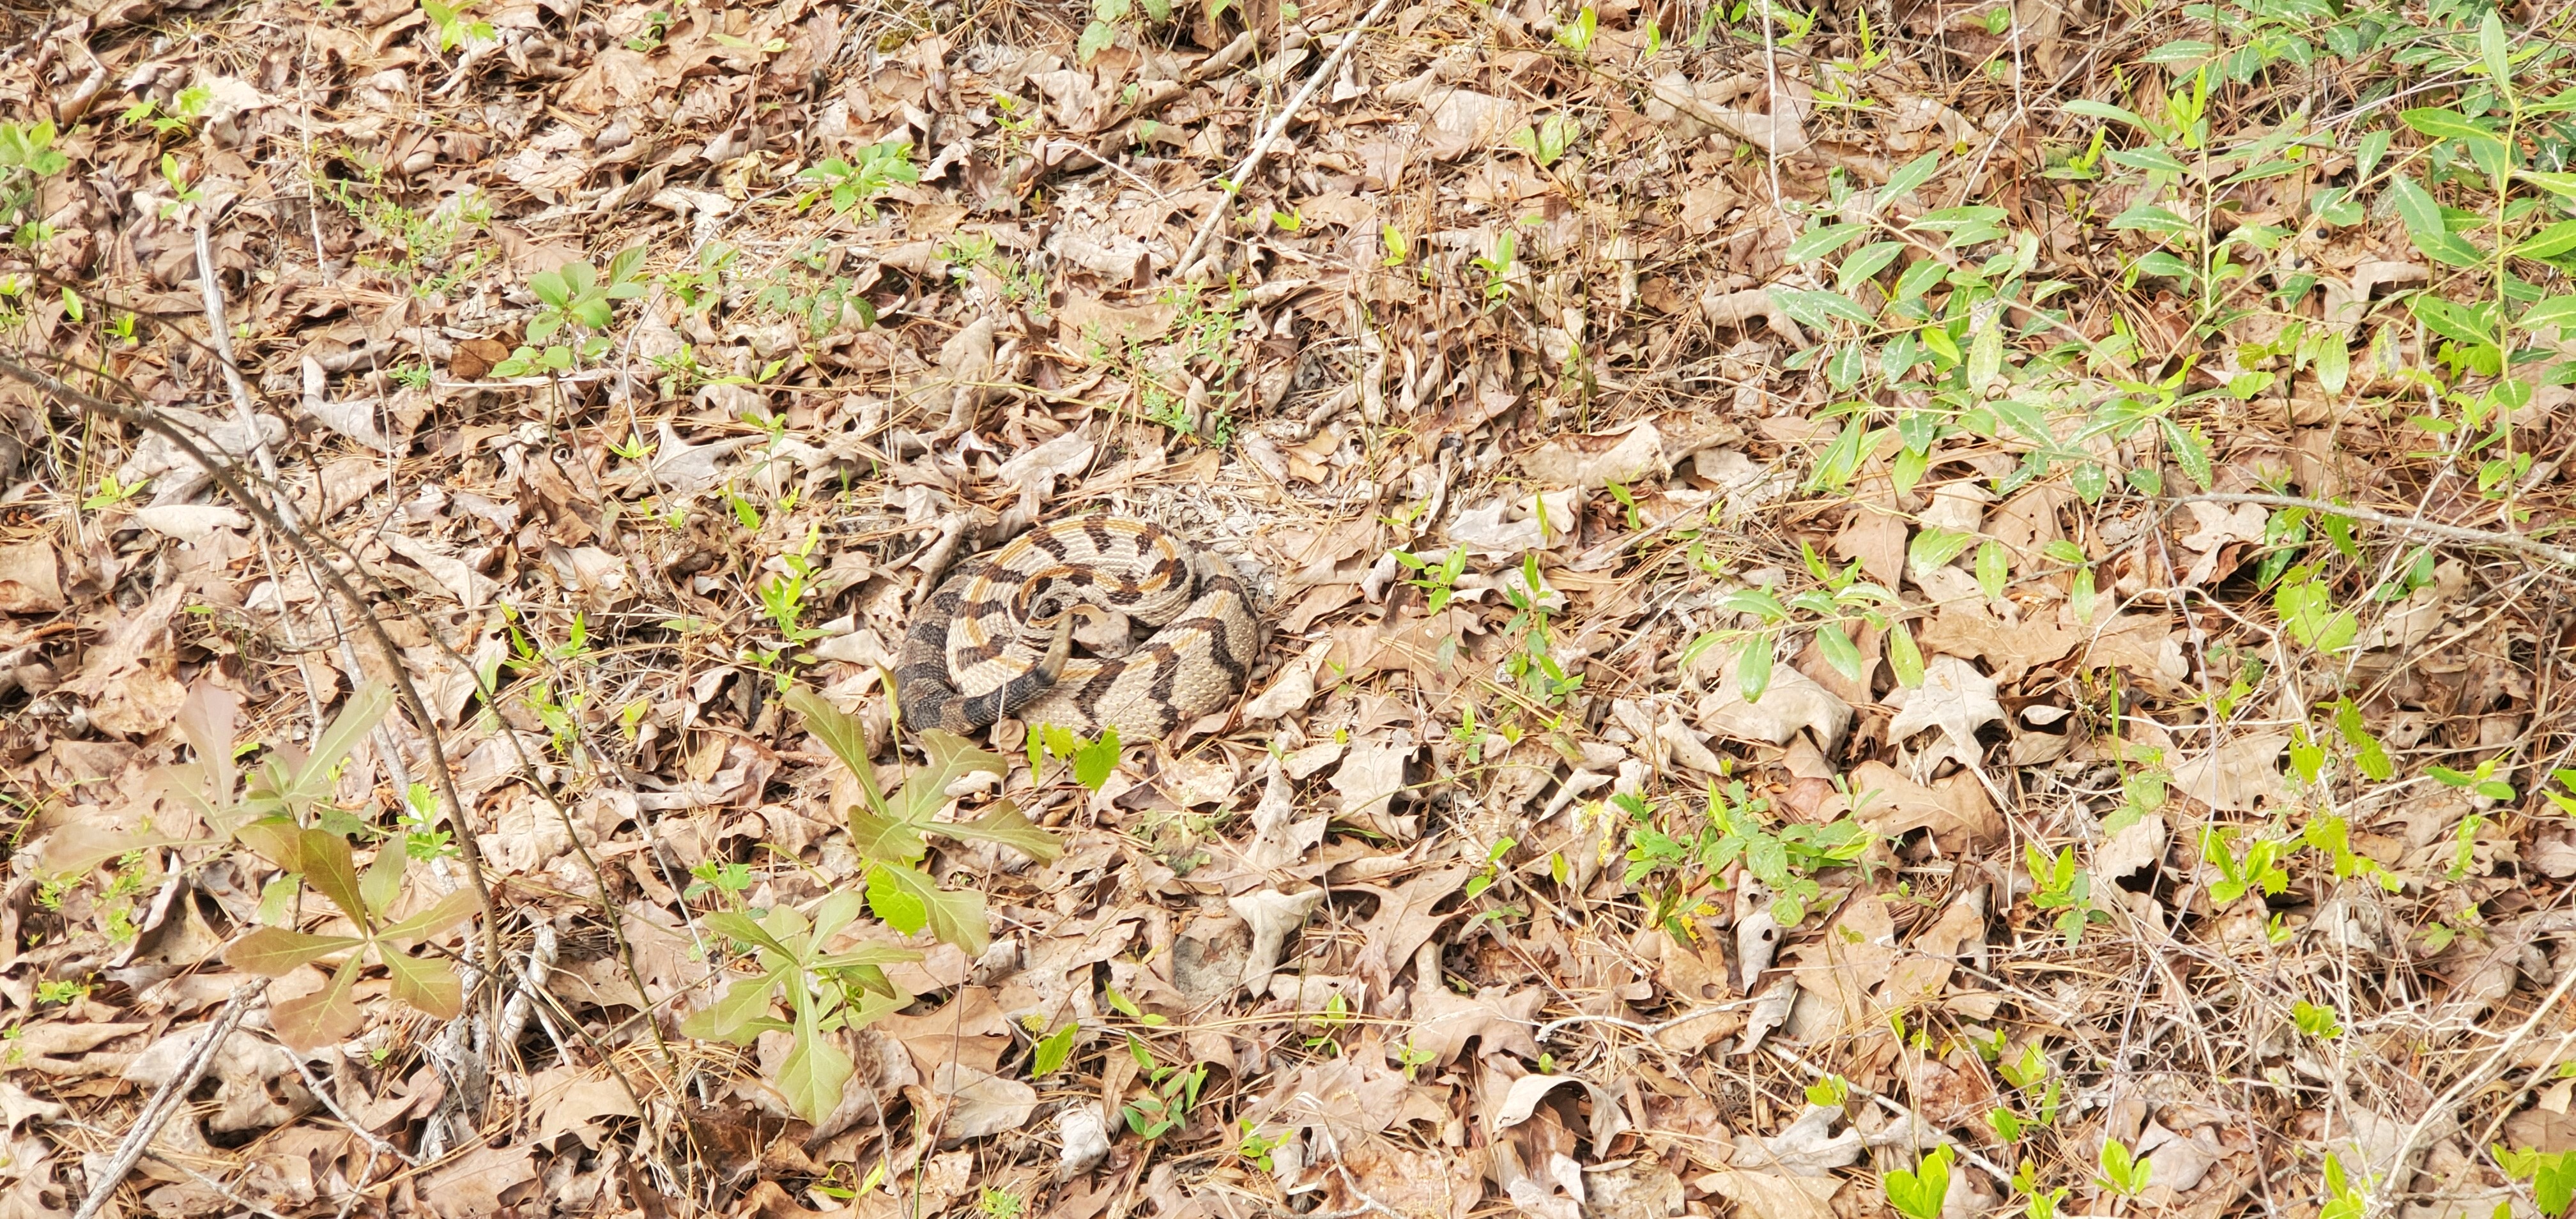 Snake in oak leaves